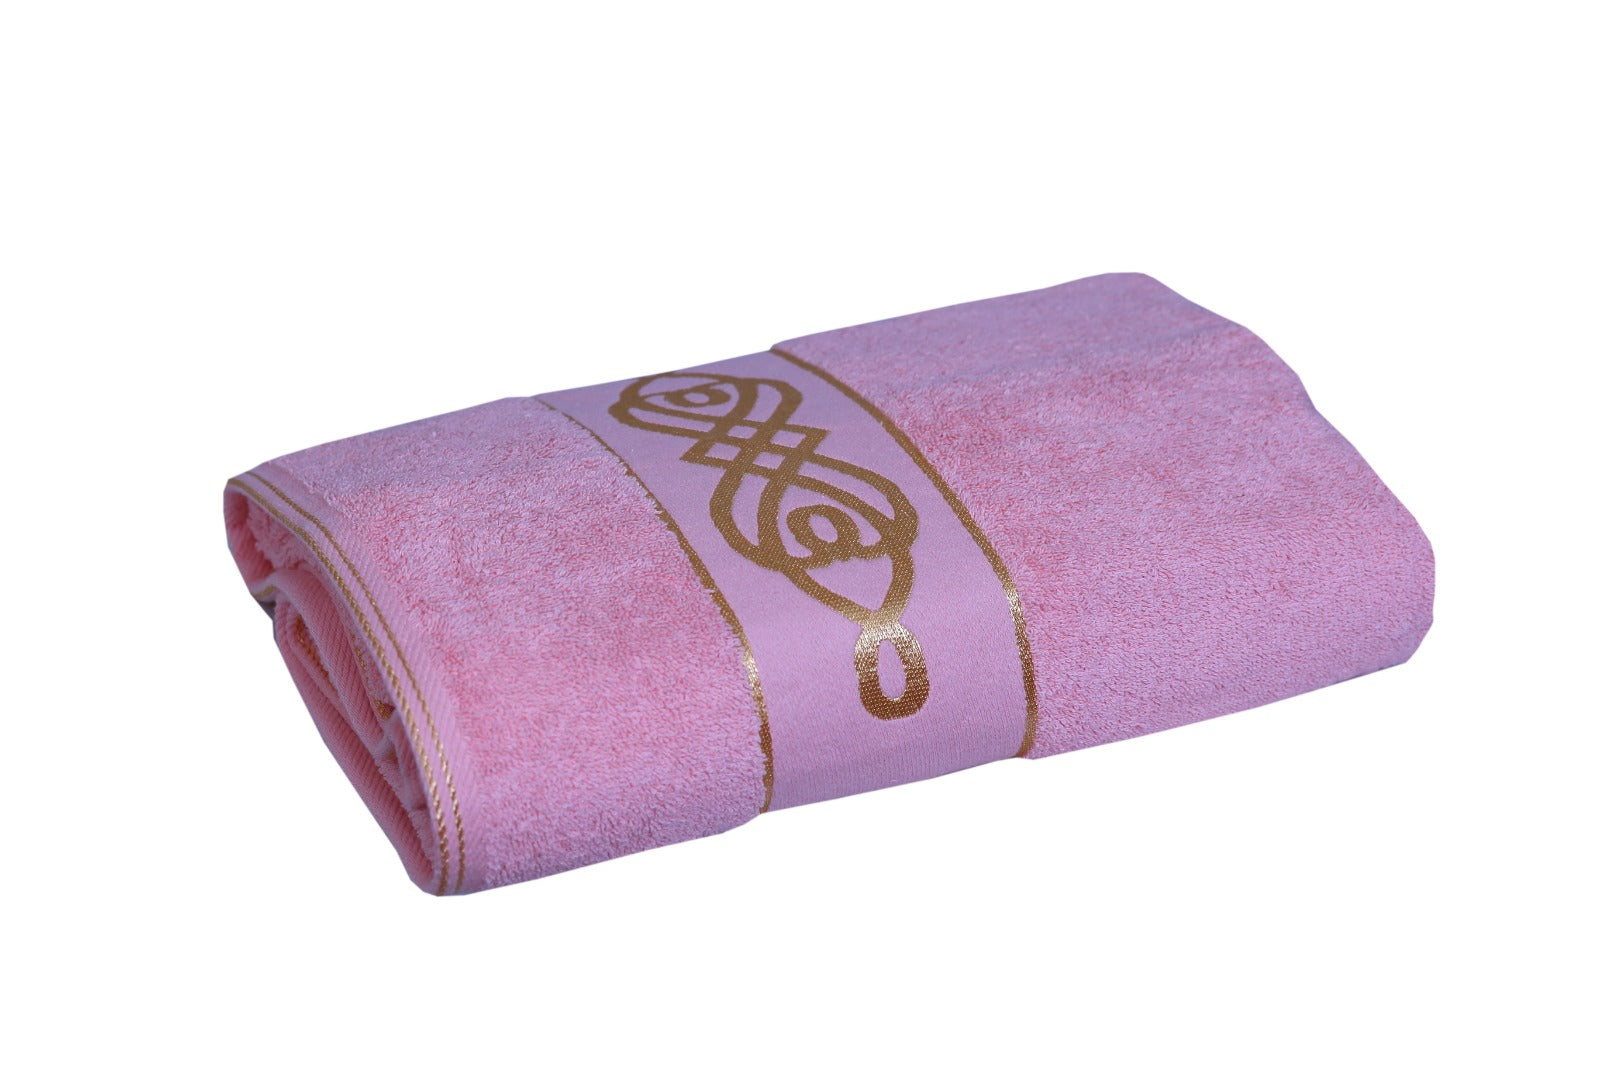 Premium Jacquard Towel - Pink